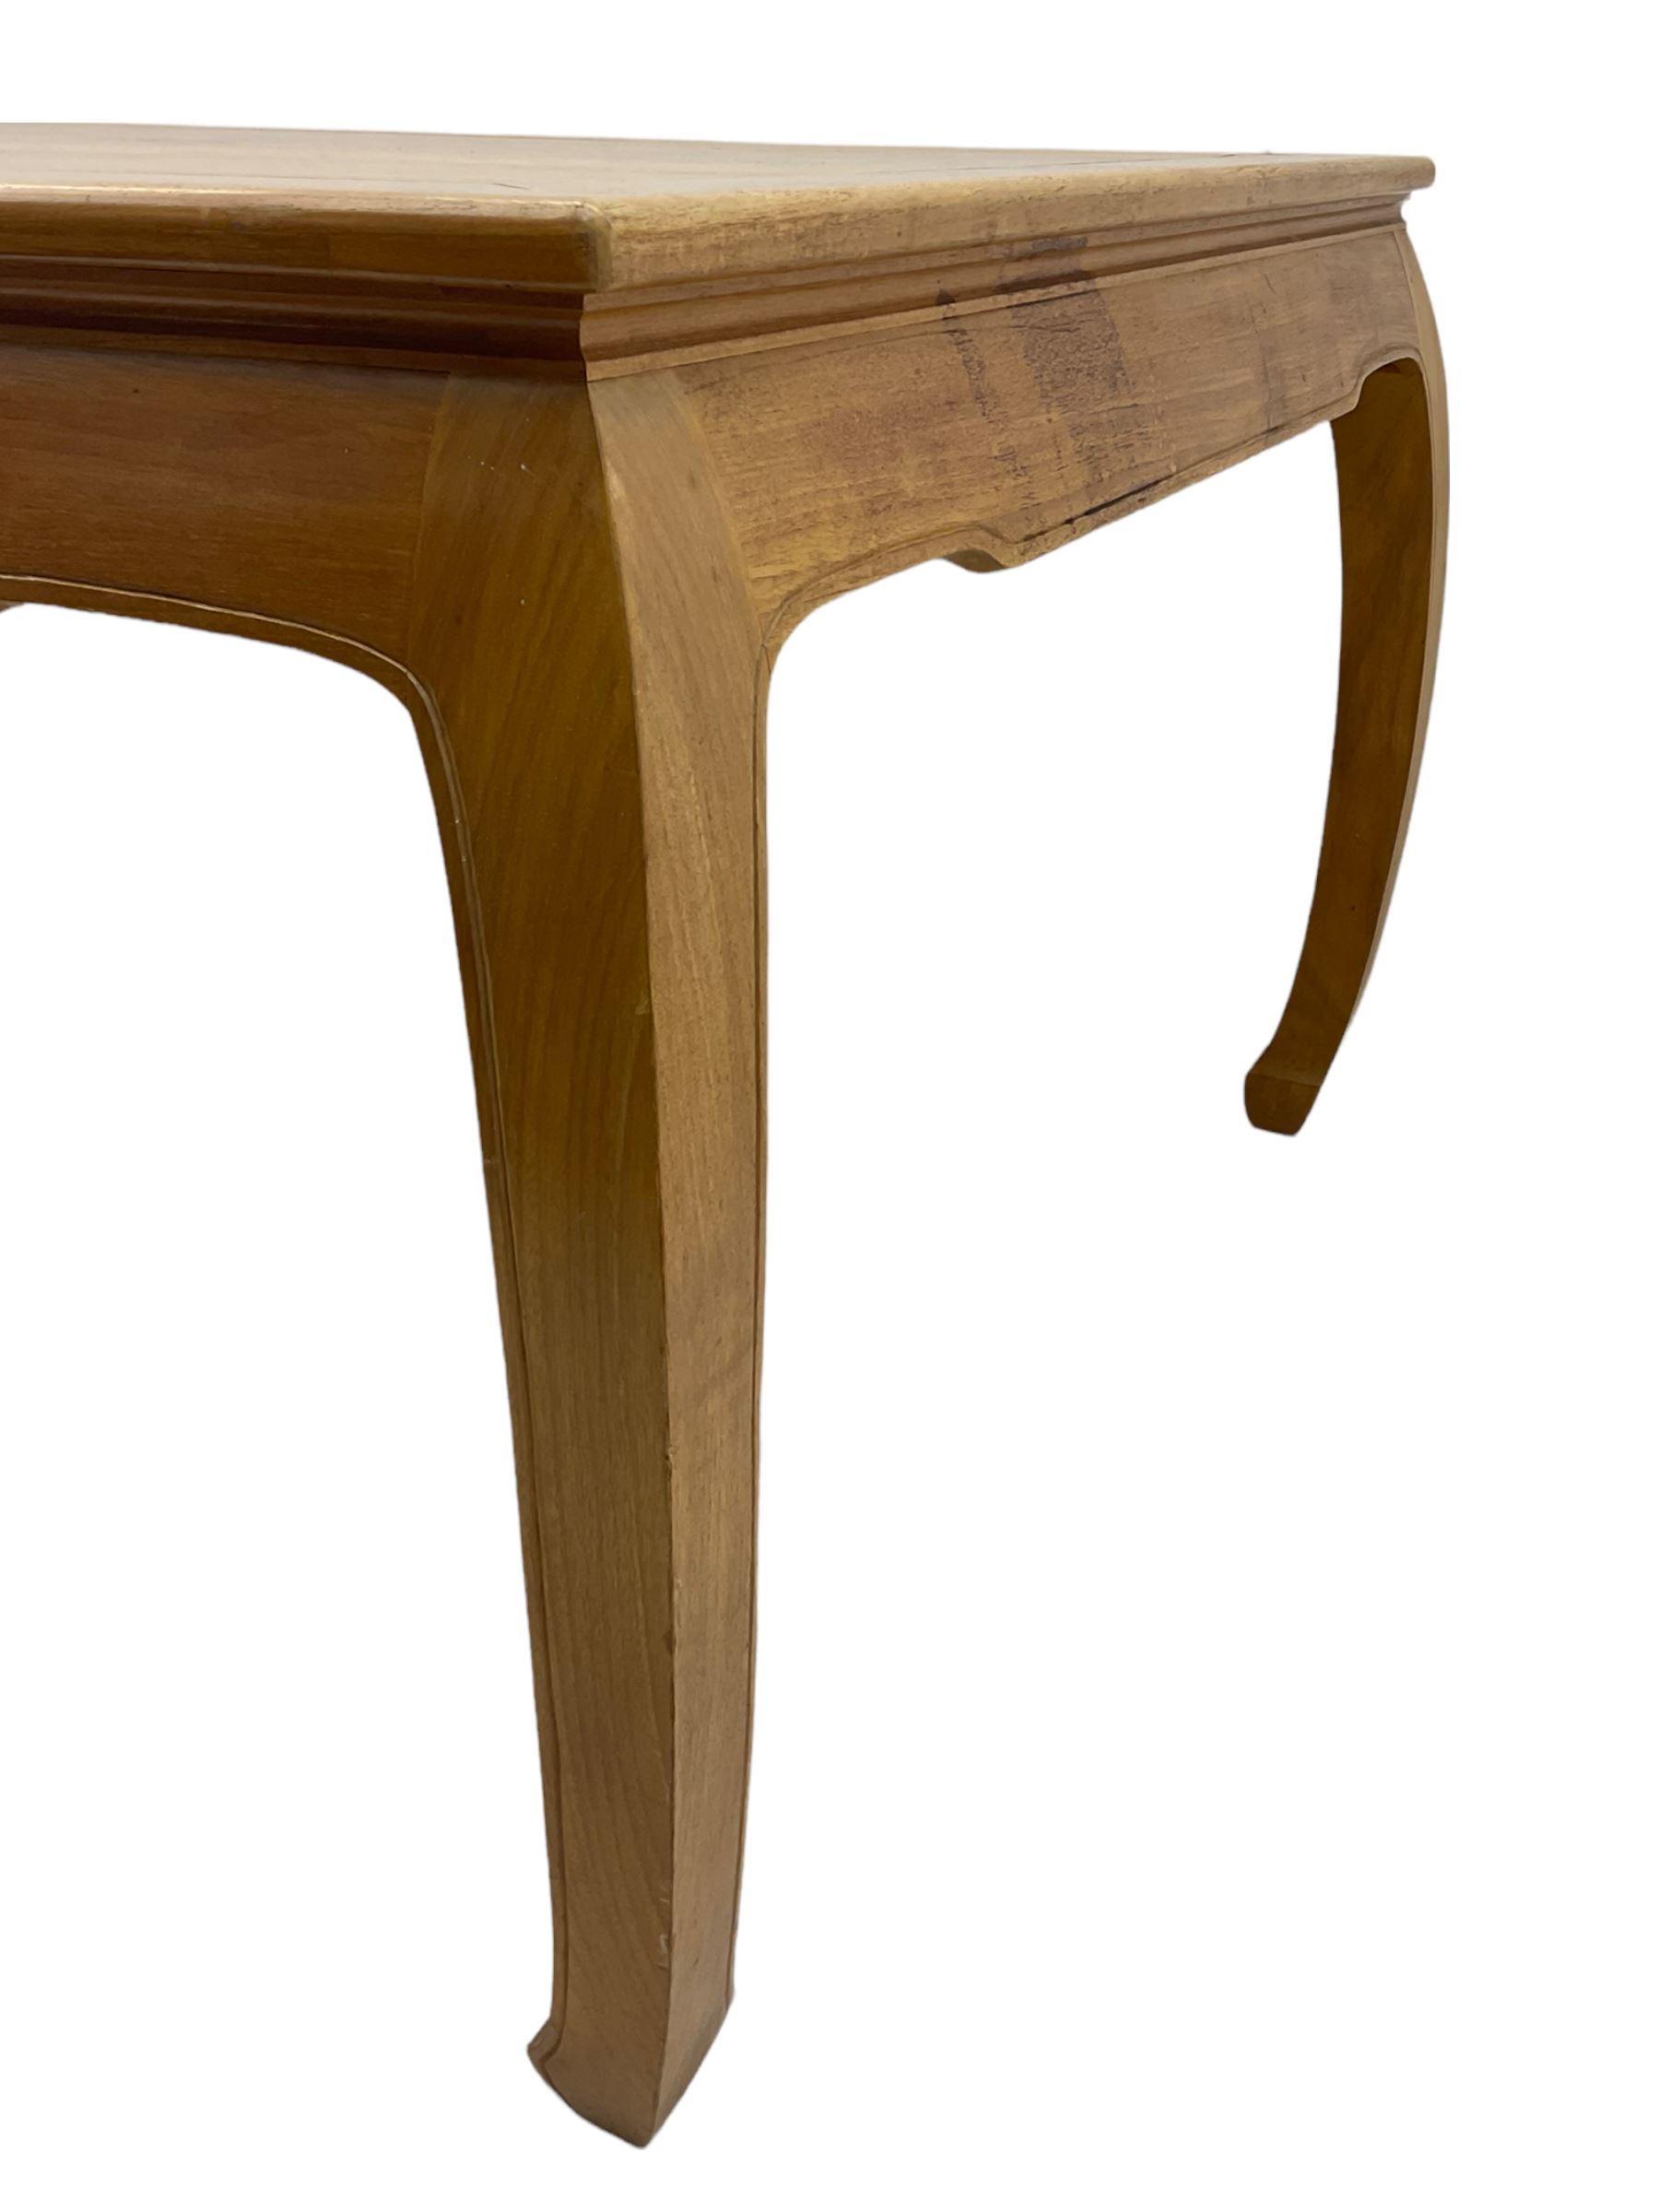 Oriental hardwood rectangular dining table - Image 21 of 22